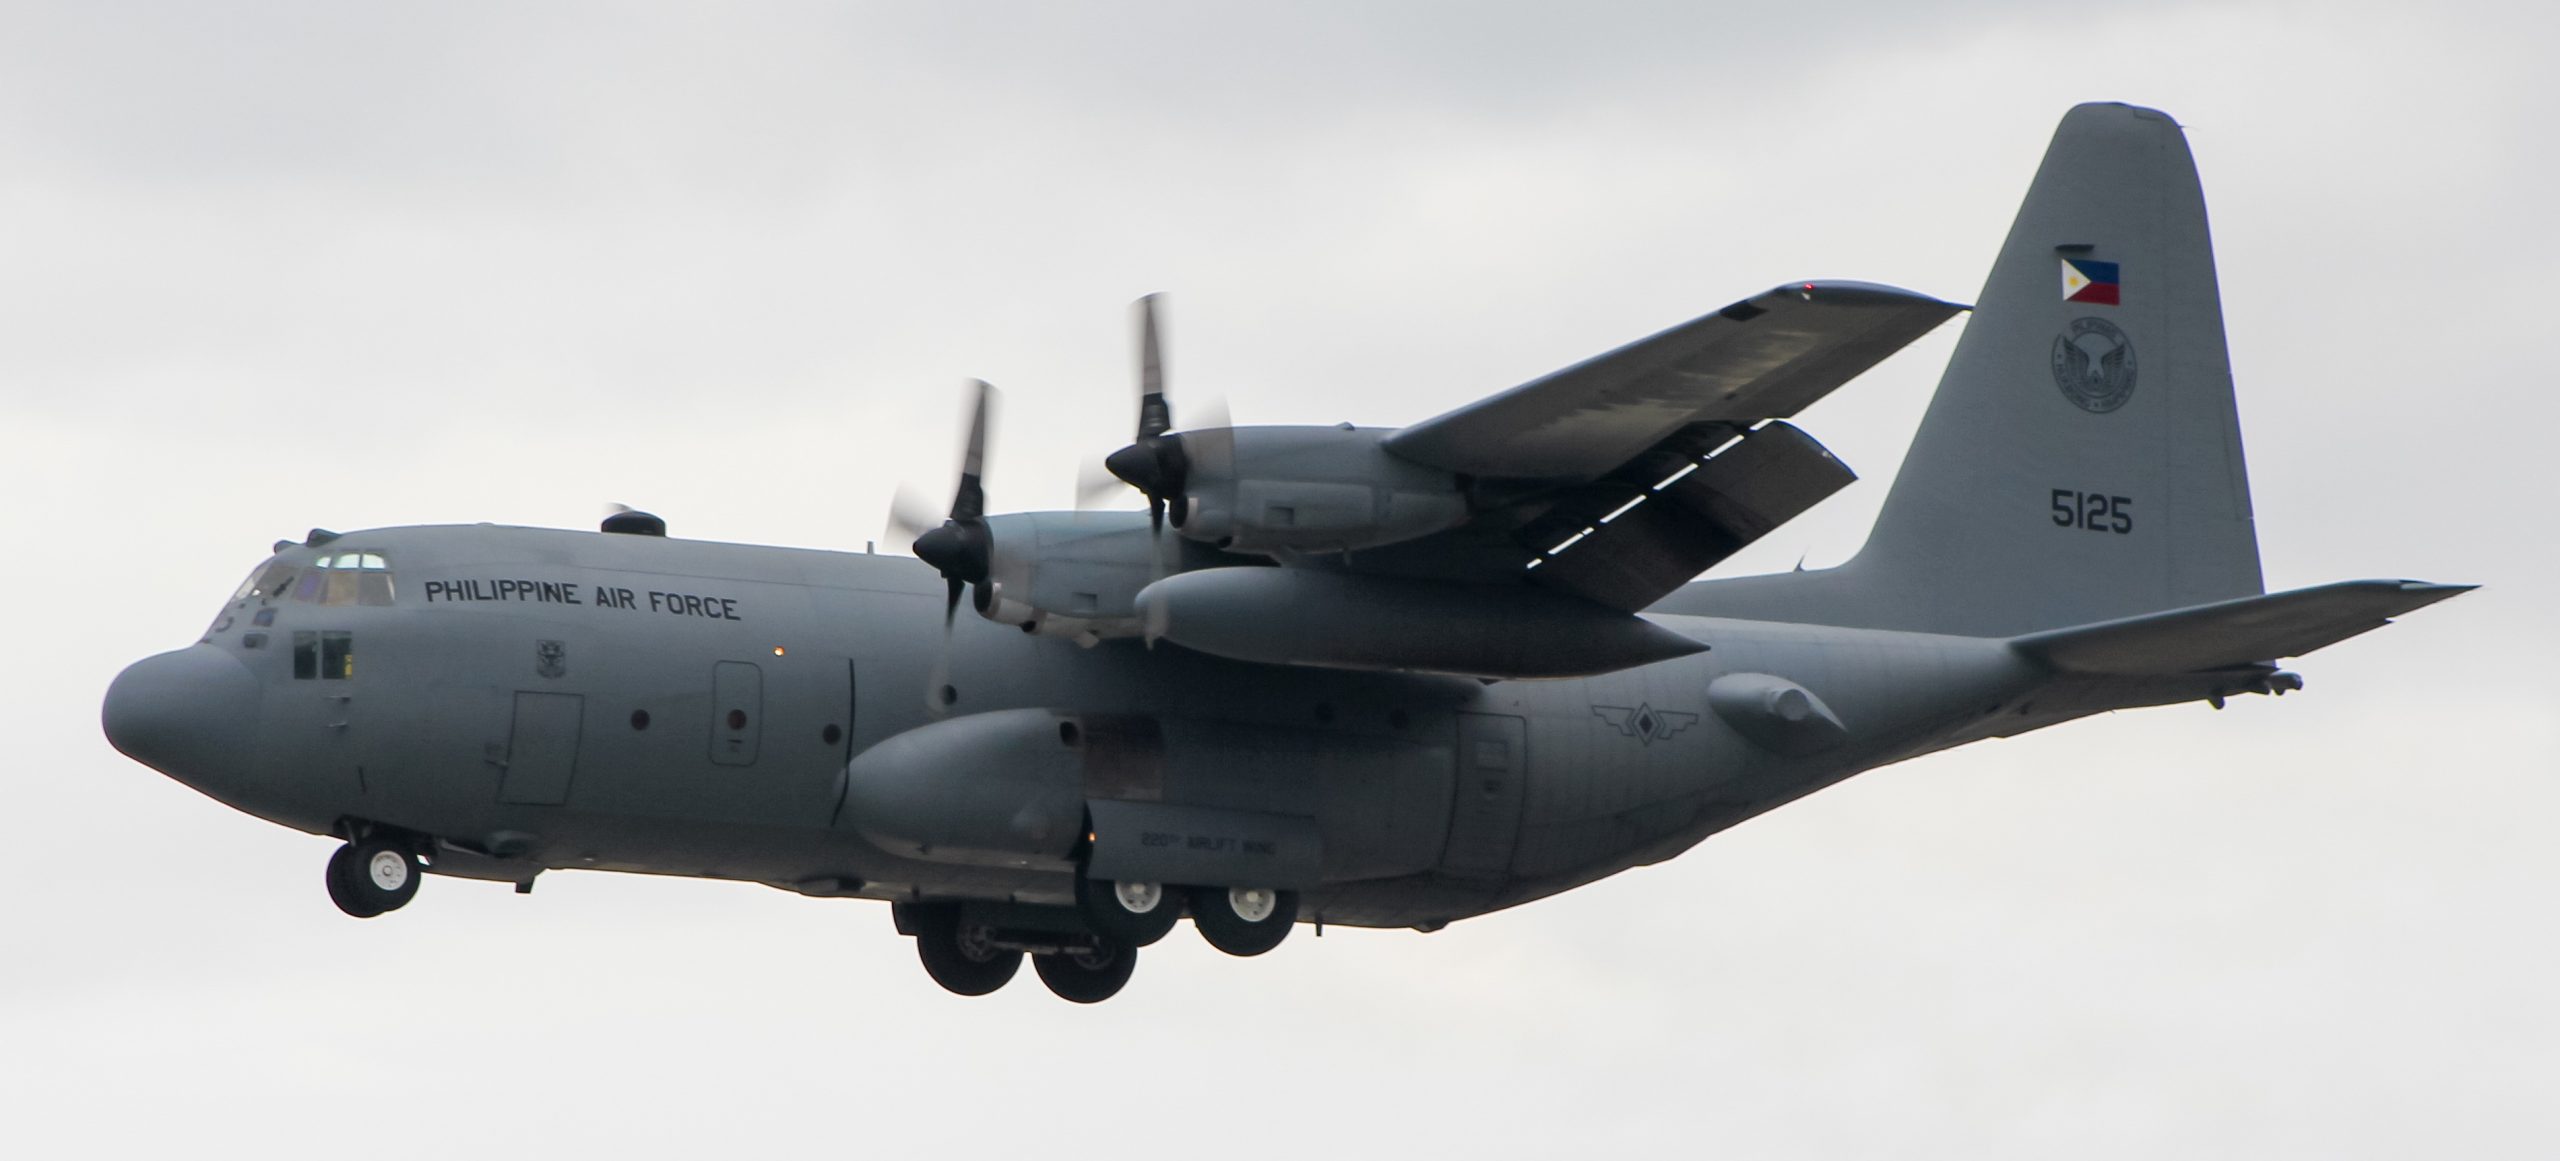 10 ឆ្នាំនៃយន្តហោះ C-130E Hercules នៅក្នុងកងកម្លាំងប្រដាប់អាវុធនៃប្រទេសប៉ូឡូញ, ផ្នែកទី 1